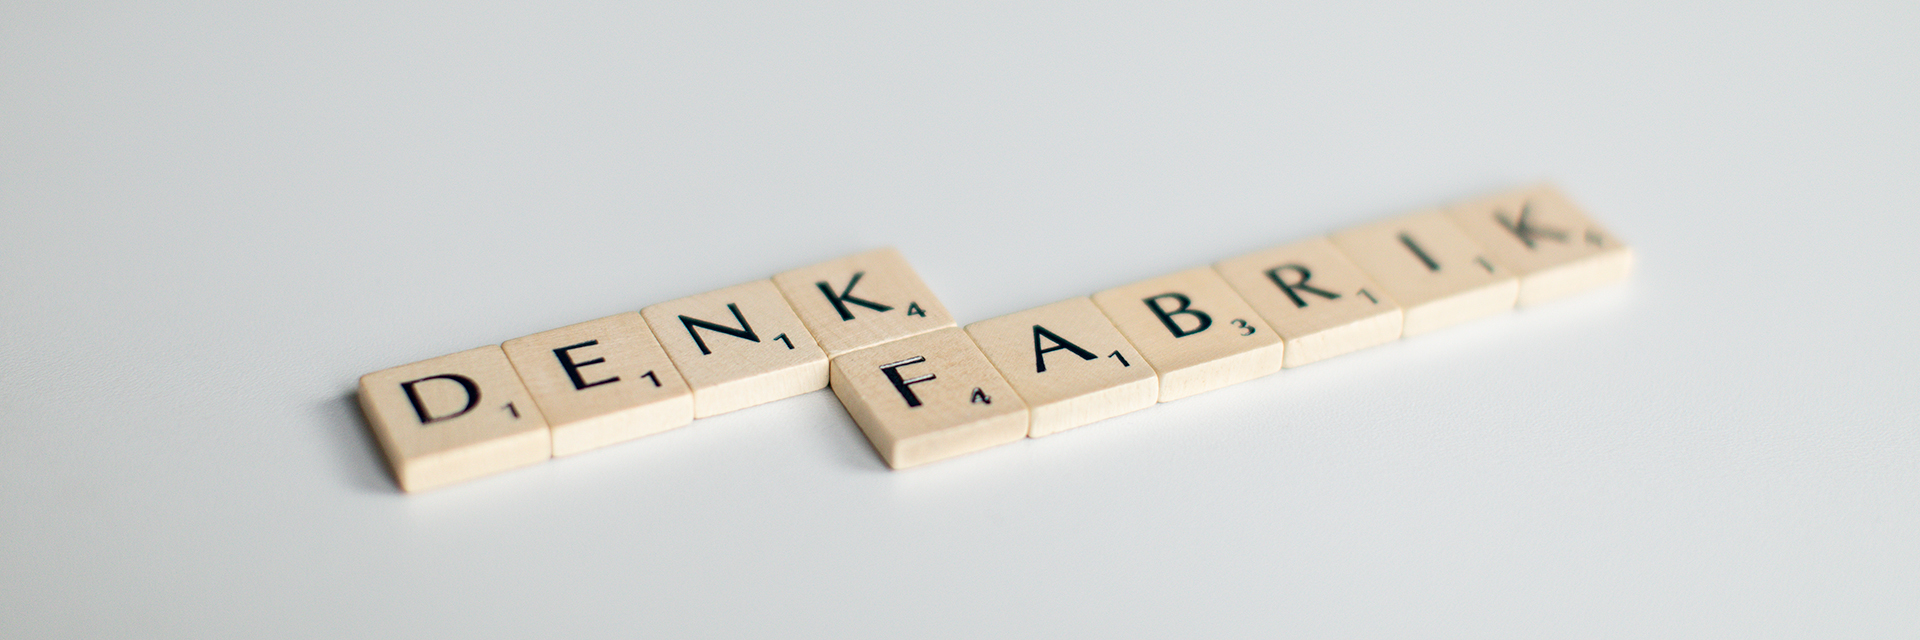 Scrabblesteine mit dem Wort Denkfabrik vor weißem Hintergrund